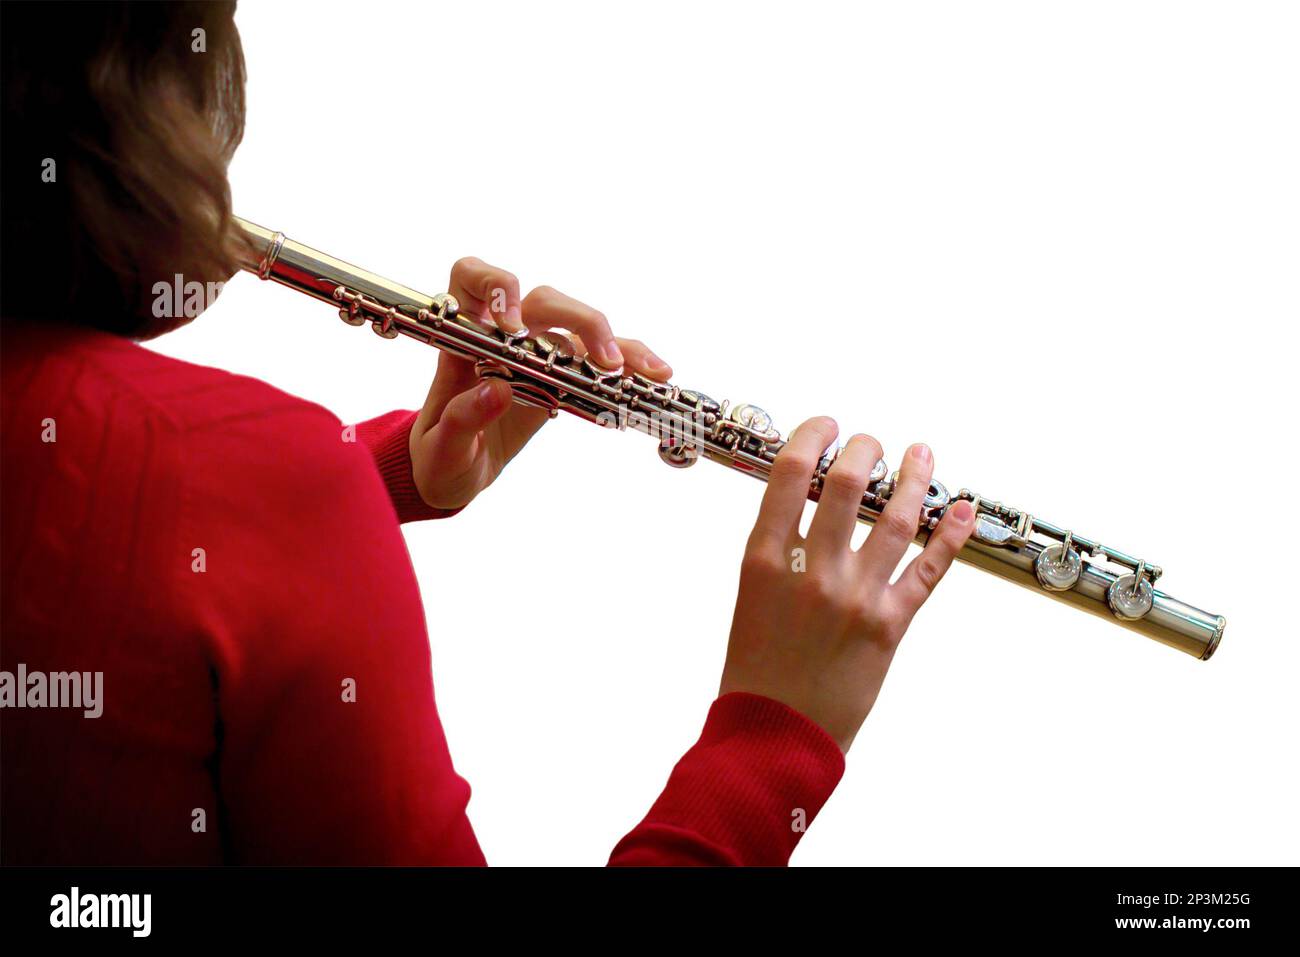 La donna tiene un grande flauto da concerto (in mani ravvicinate), isolato su uno sfondo bianco. Musicista professionista alla prova Foto Stock